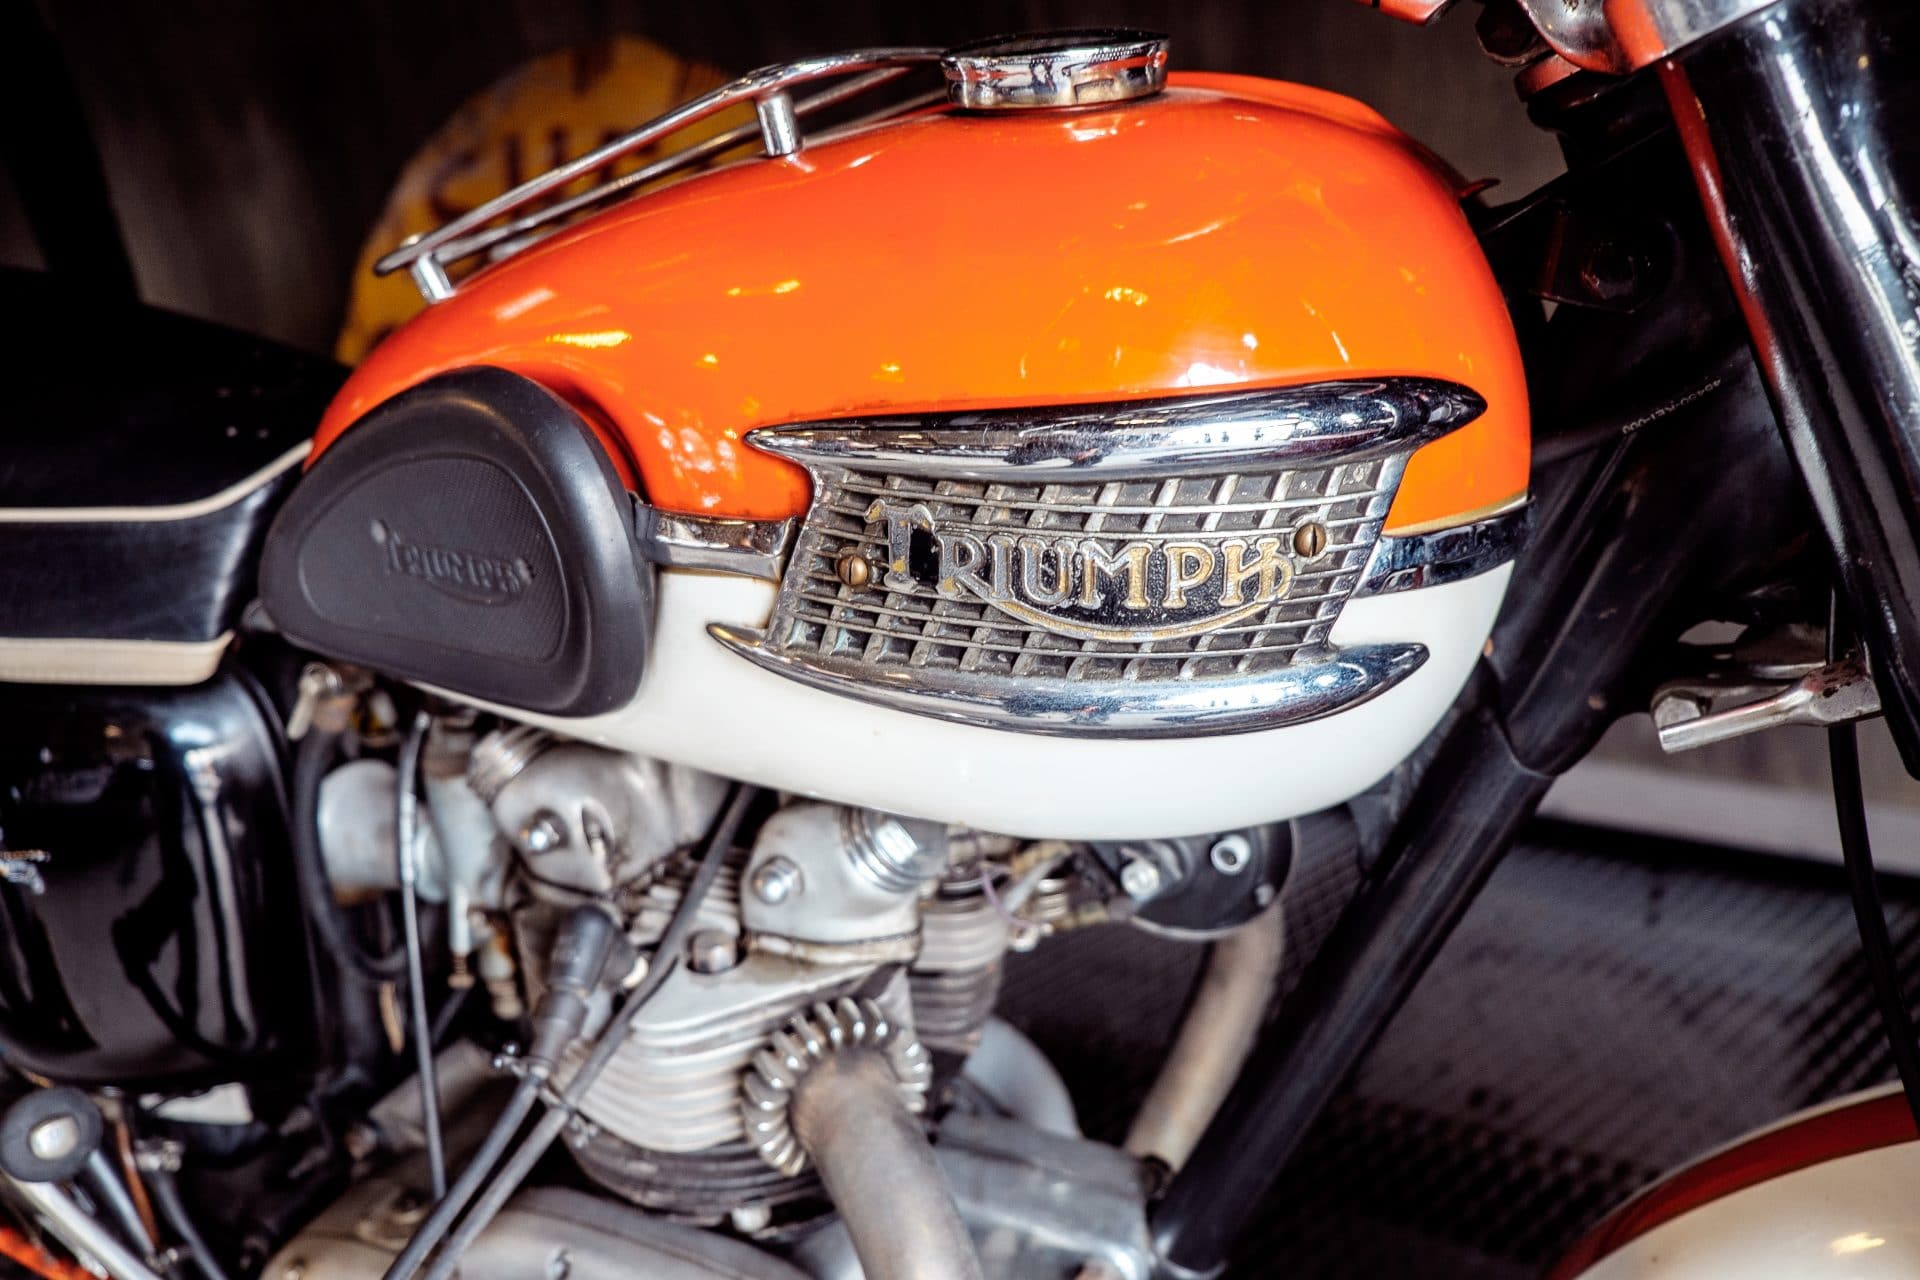 Moto triumph orange